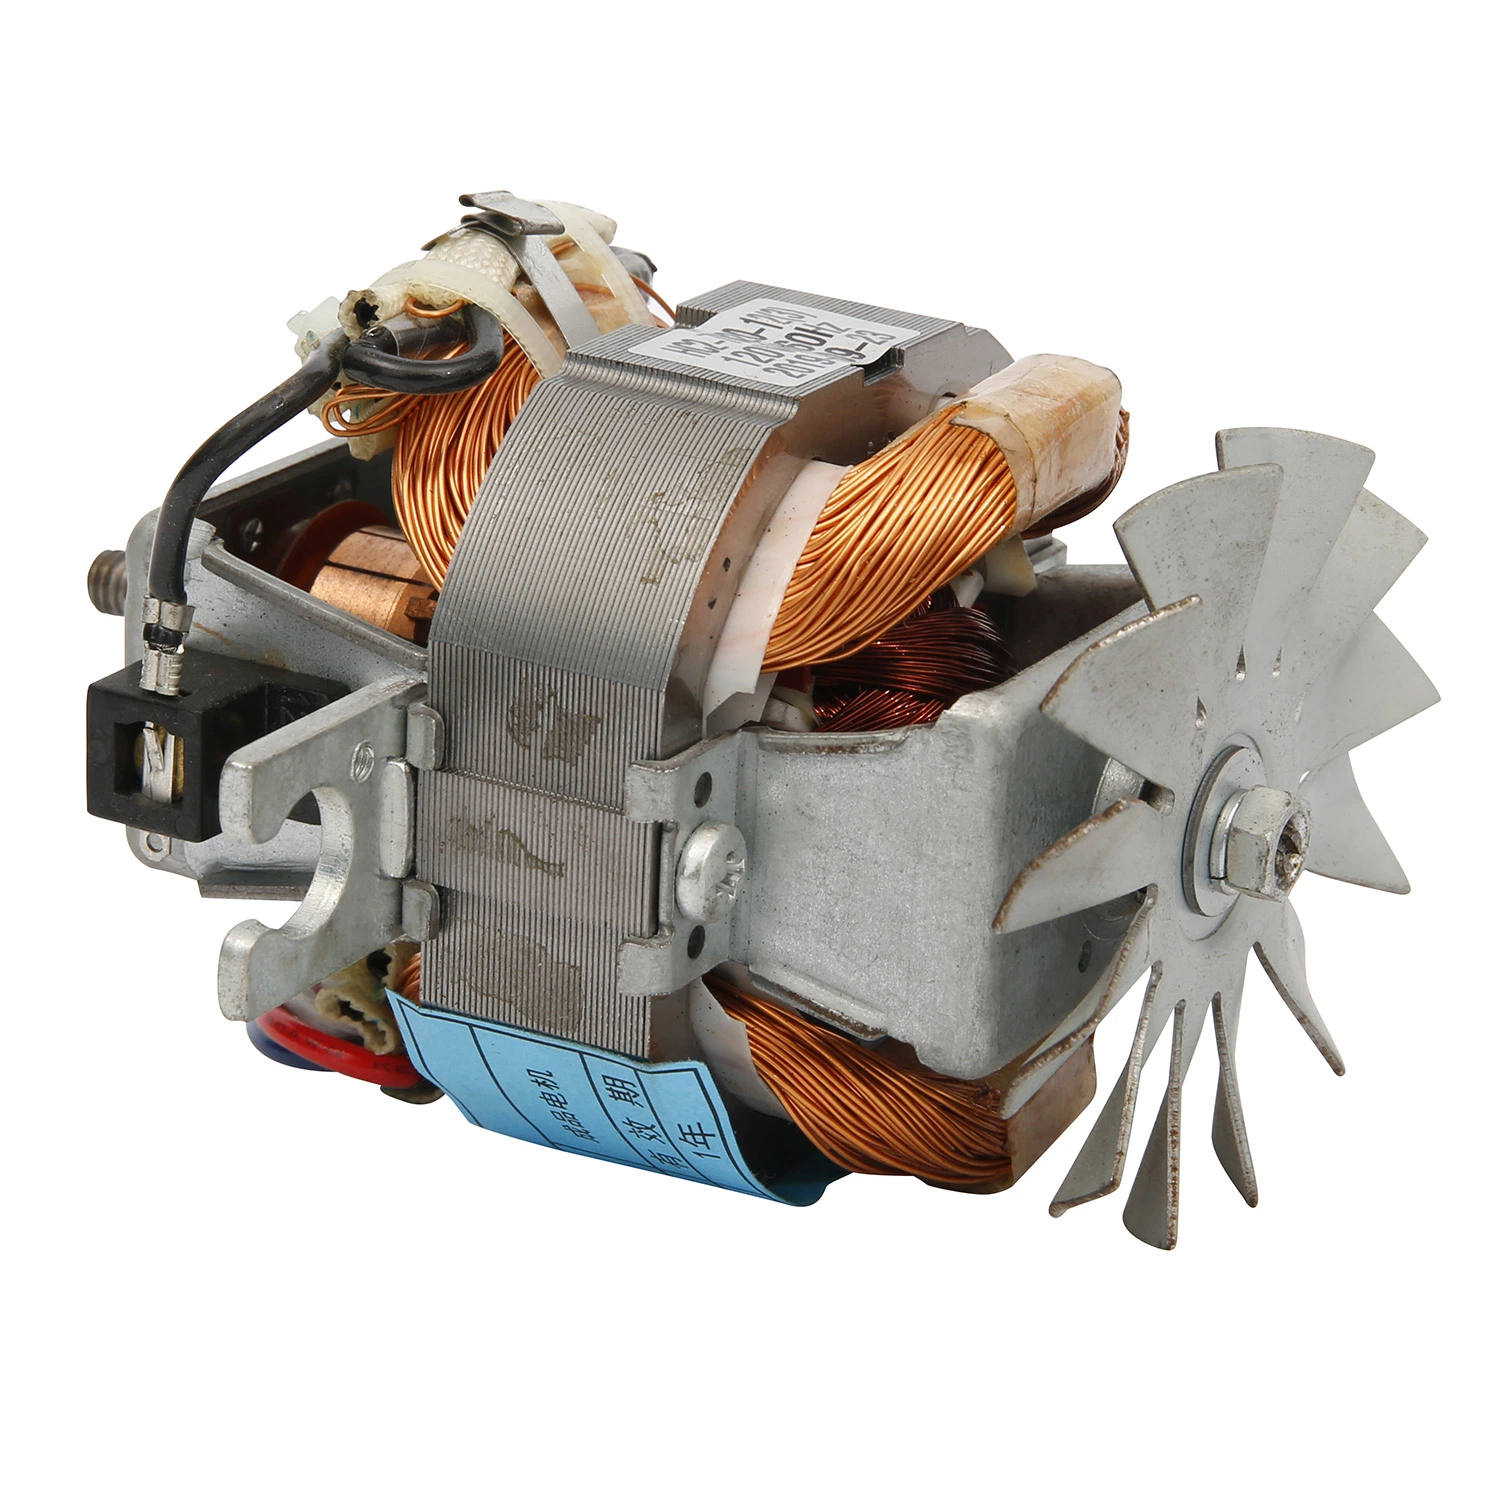 محرك كهربائي بموتور DC محرك عالي السرعة لأداة المطبخ Hc7020